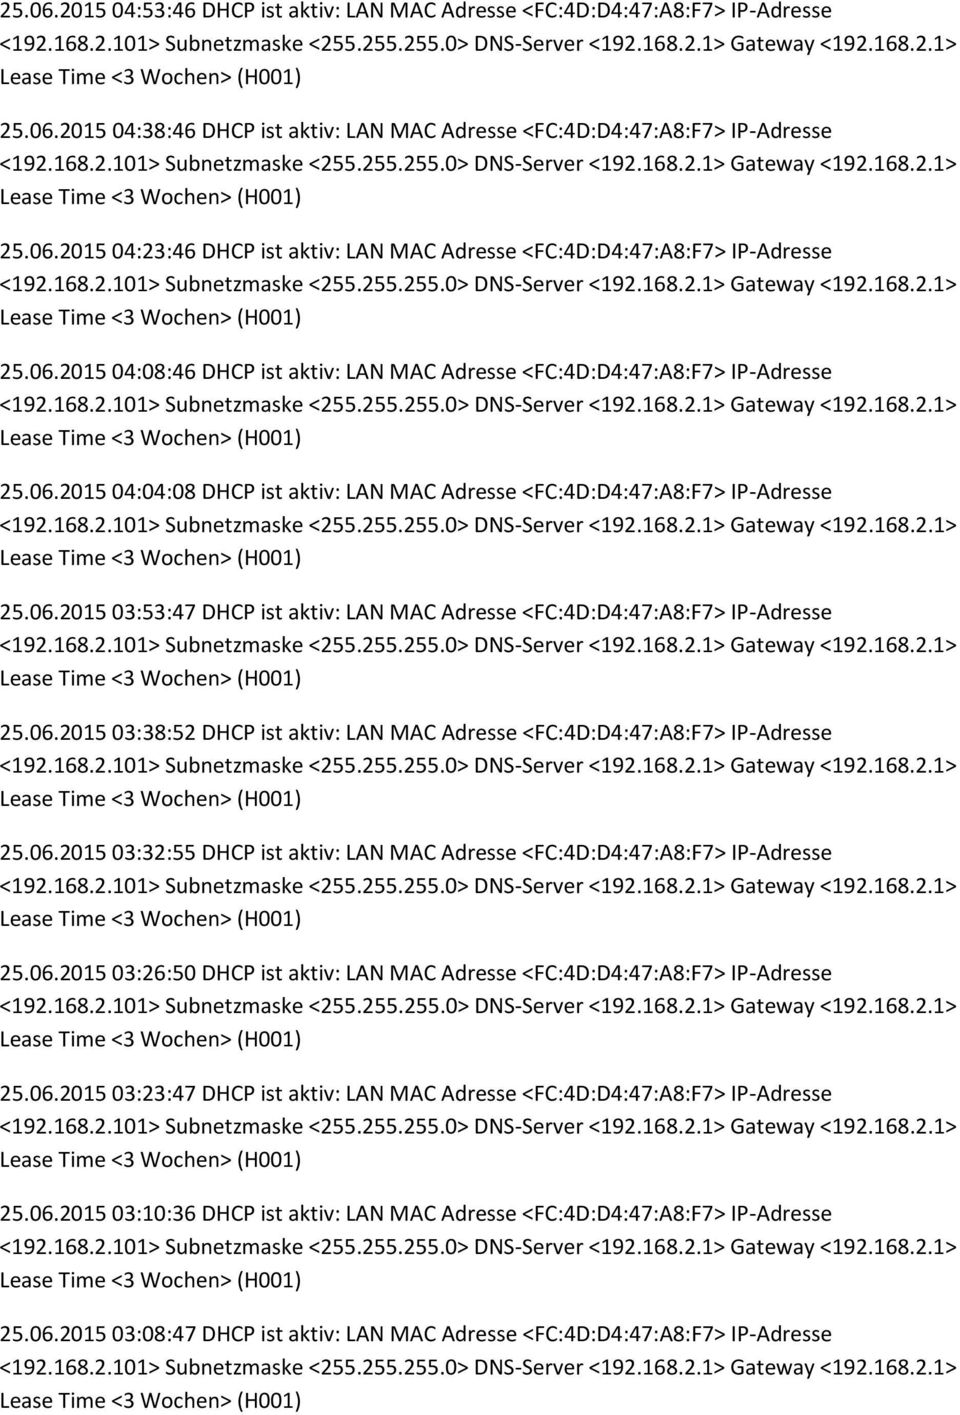 06.2015 03:38:52 DHCP ist aktiv: LAN MAC Adresse <FC:4D:D4:47:A8:F7> IP-Adresse 25.06.2015 03:32:55 DHCP ist aktiv: LAN MAC Adresse <FC:4D:D4:47:A8:F7> IP-Adresse 25.06.2015 03:26:50 DHCP ist aktiv: LAN MAC Adresse <FC:4D:D4:47:A8:F7> IP-Adresse 25.